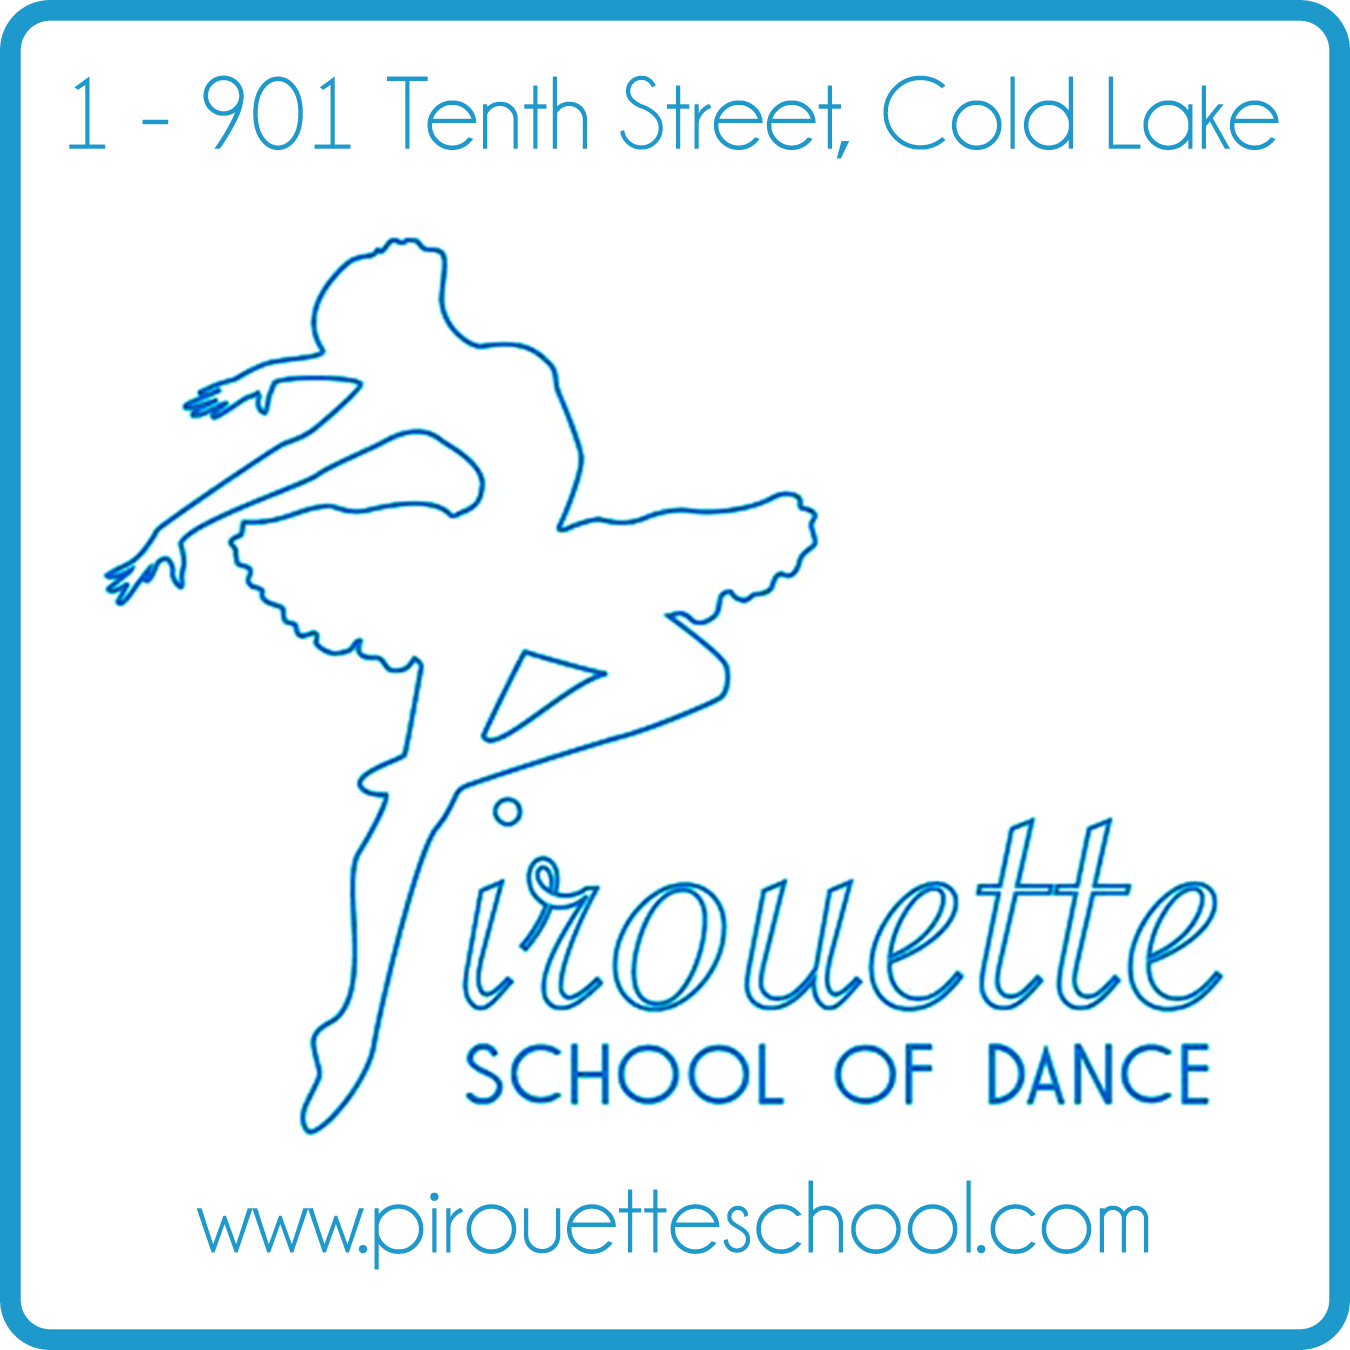 Pirouette School of Dance